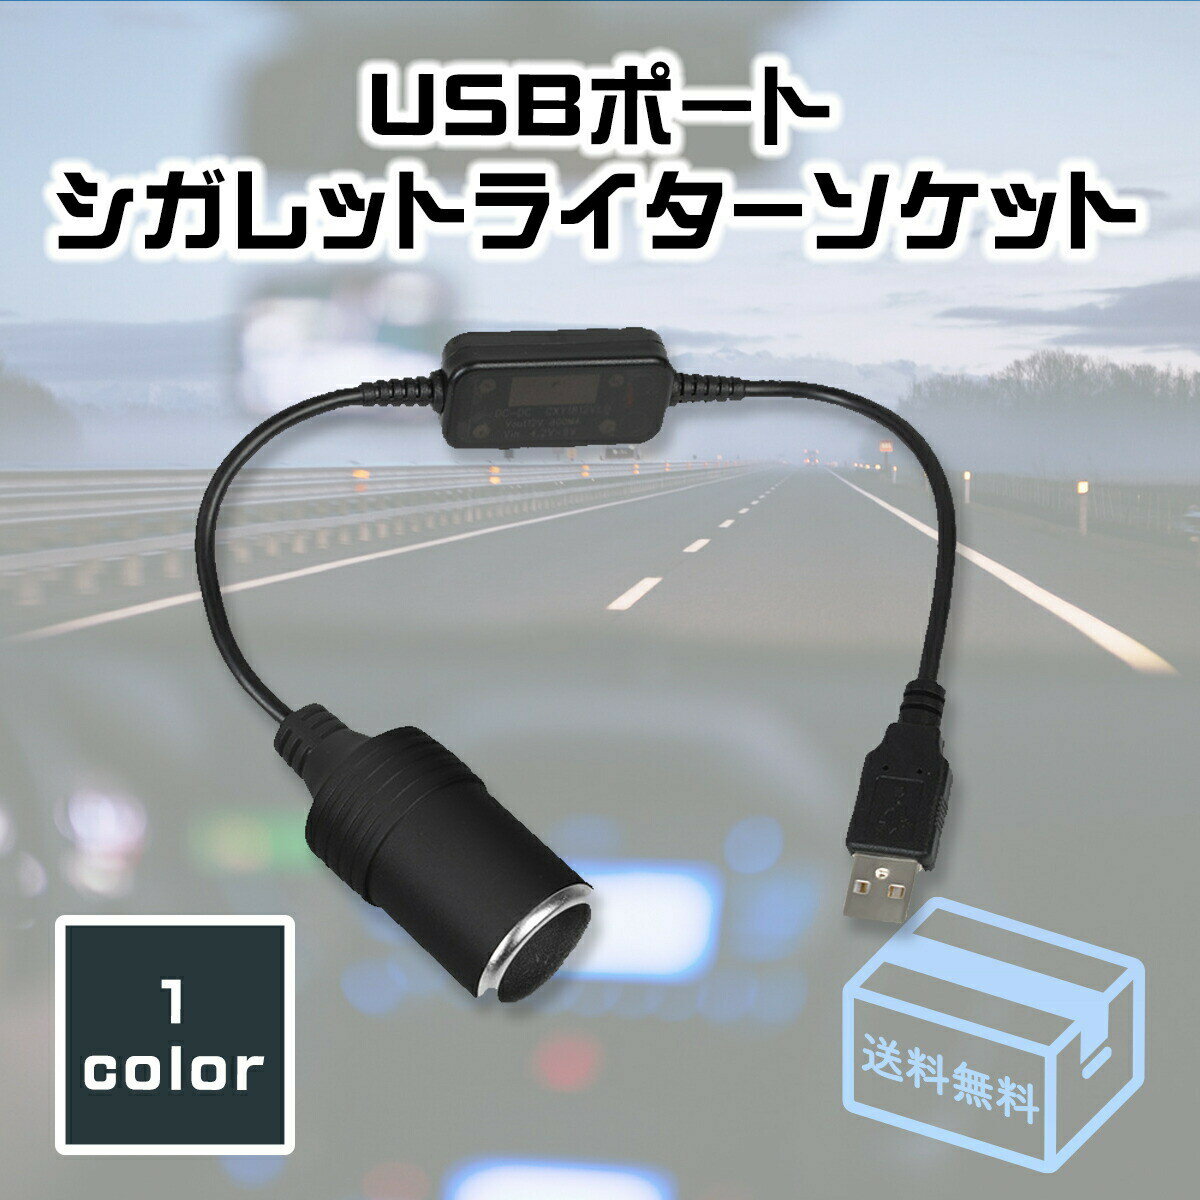 【送料無料】シガーソケット USBポート シガレットライター ソケット 変換アダプター アダプタコード USB用変換器 US…